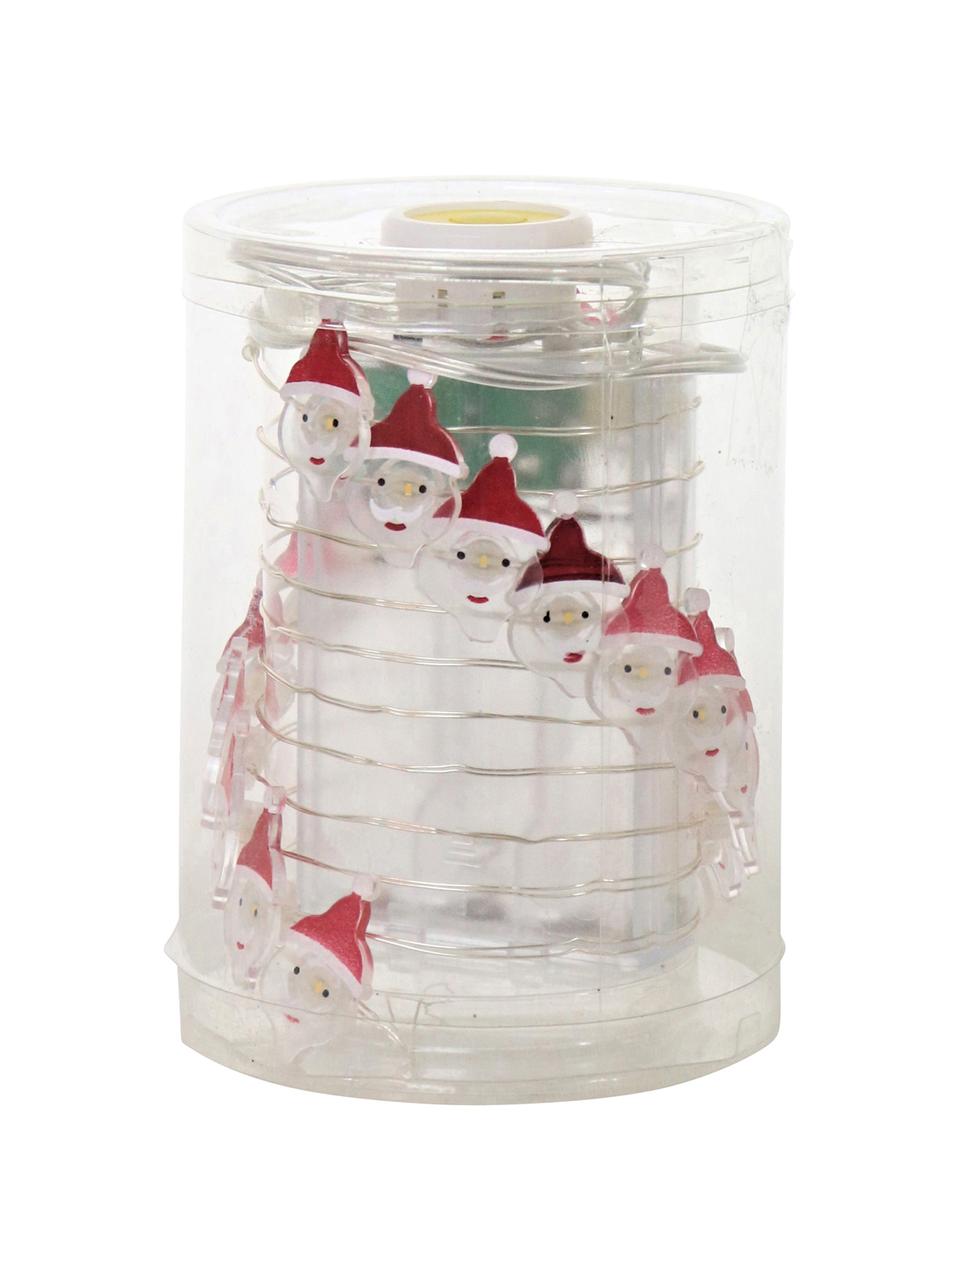 Girlanda świetlna LED Santa Claus, Metalowy drut, szkło akrylowe, metal, tworzywo sztuczne, Biały, czerwony, D 220 cm